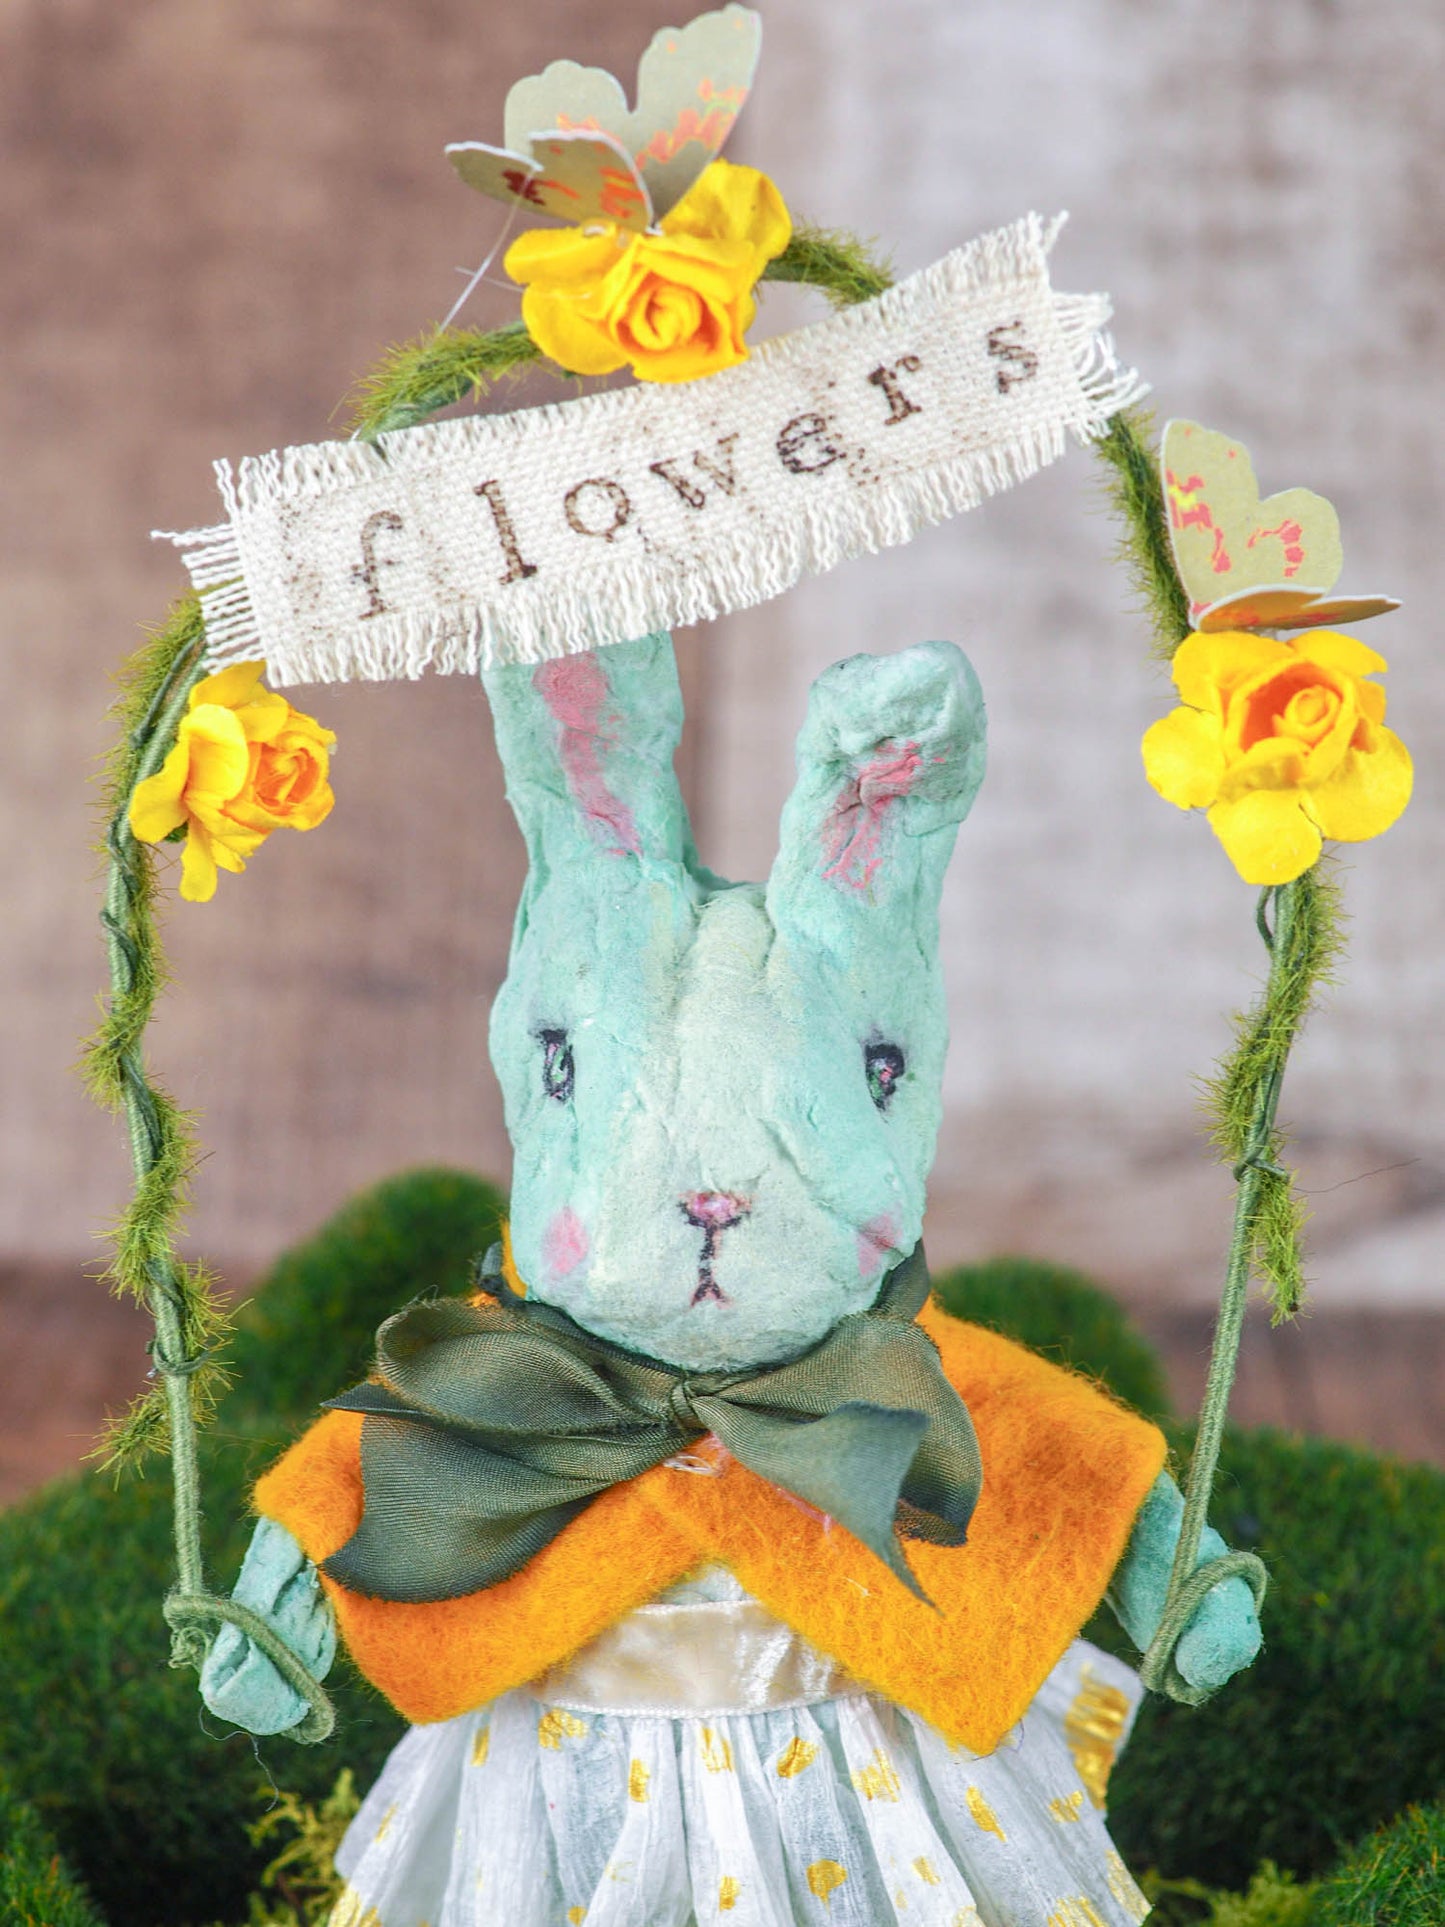 Flower bunny, Art Doll by Danita Art